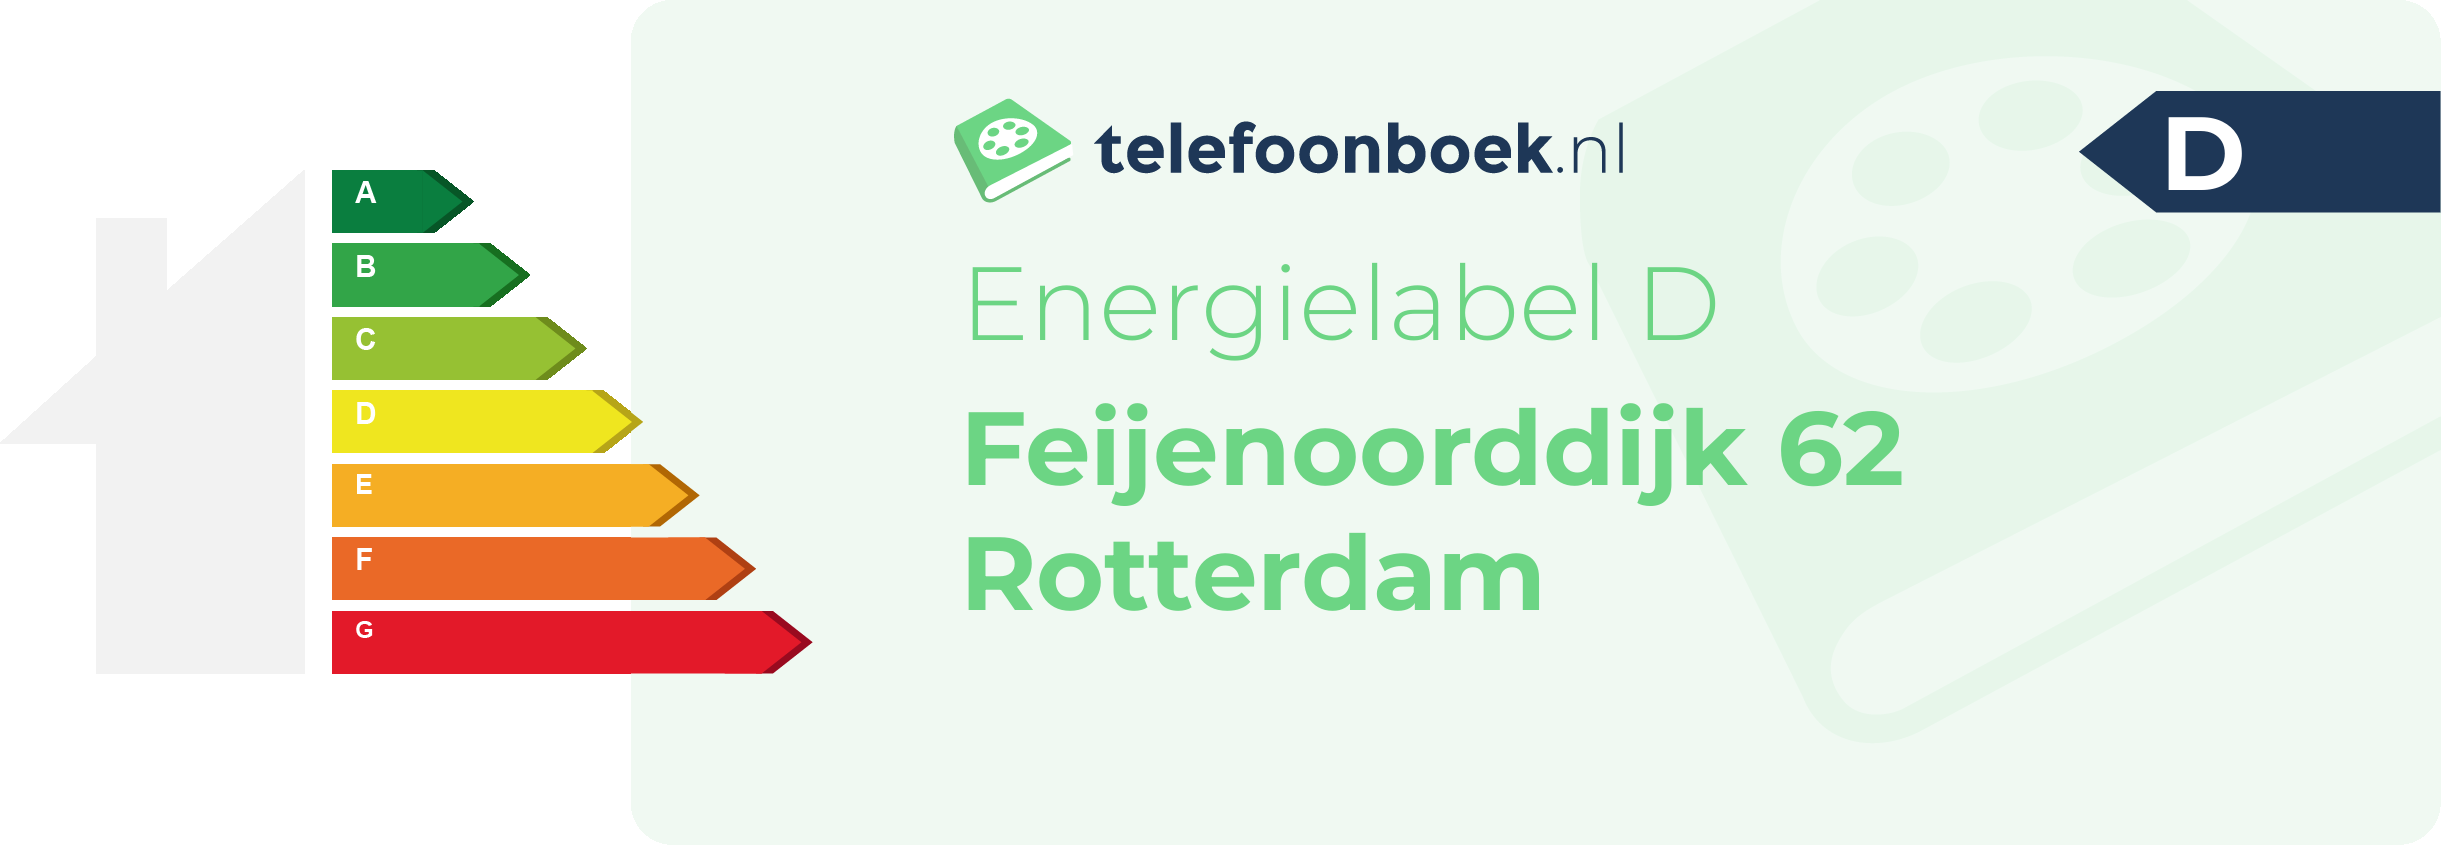 Energielabel Feijenoorddijk 62 Rotterdam